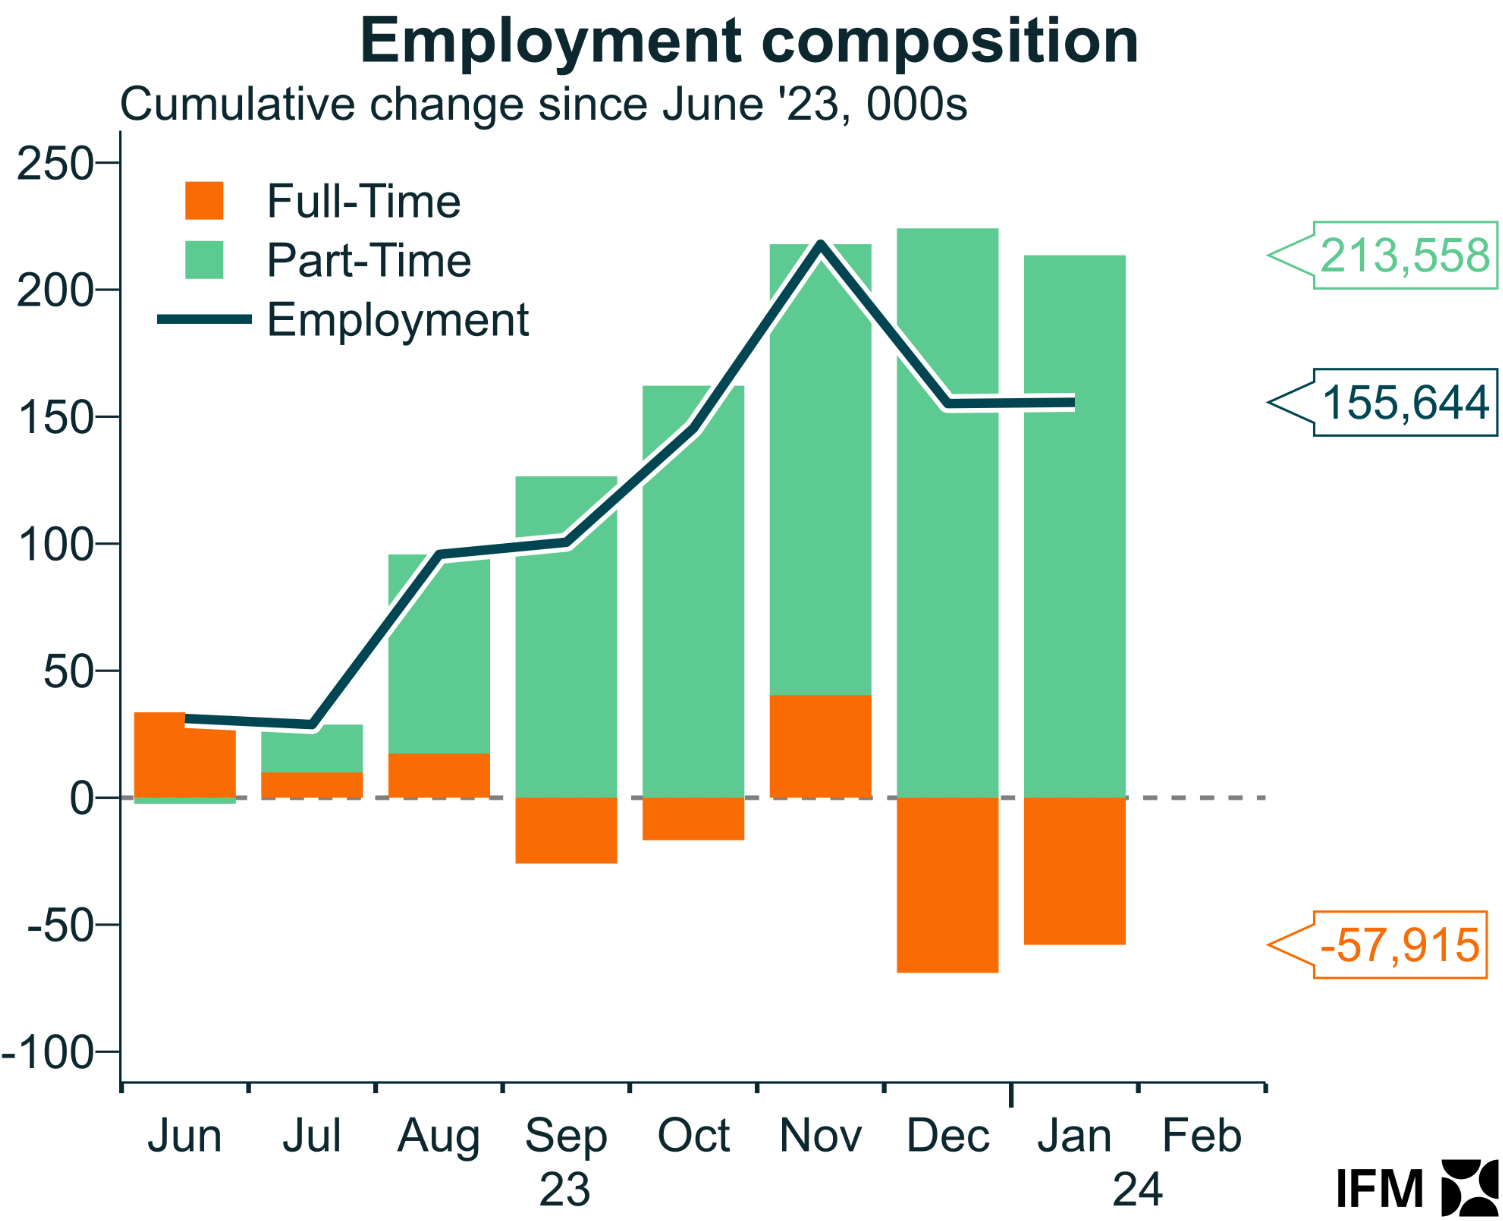 Employment composition